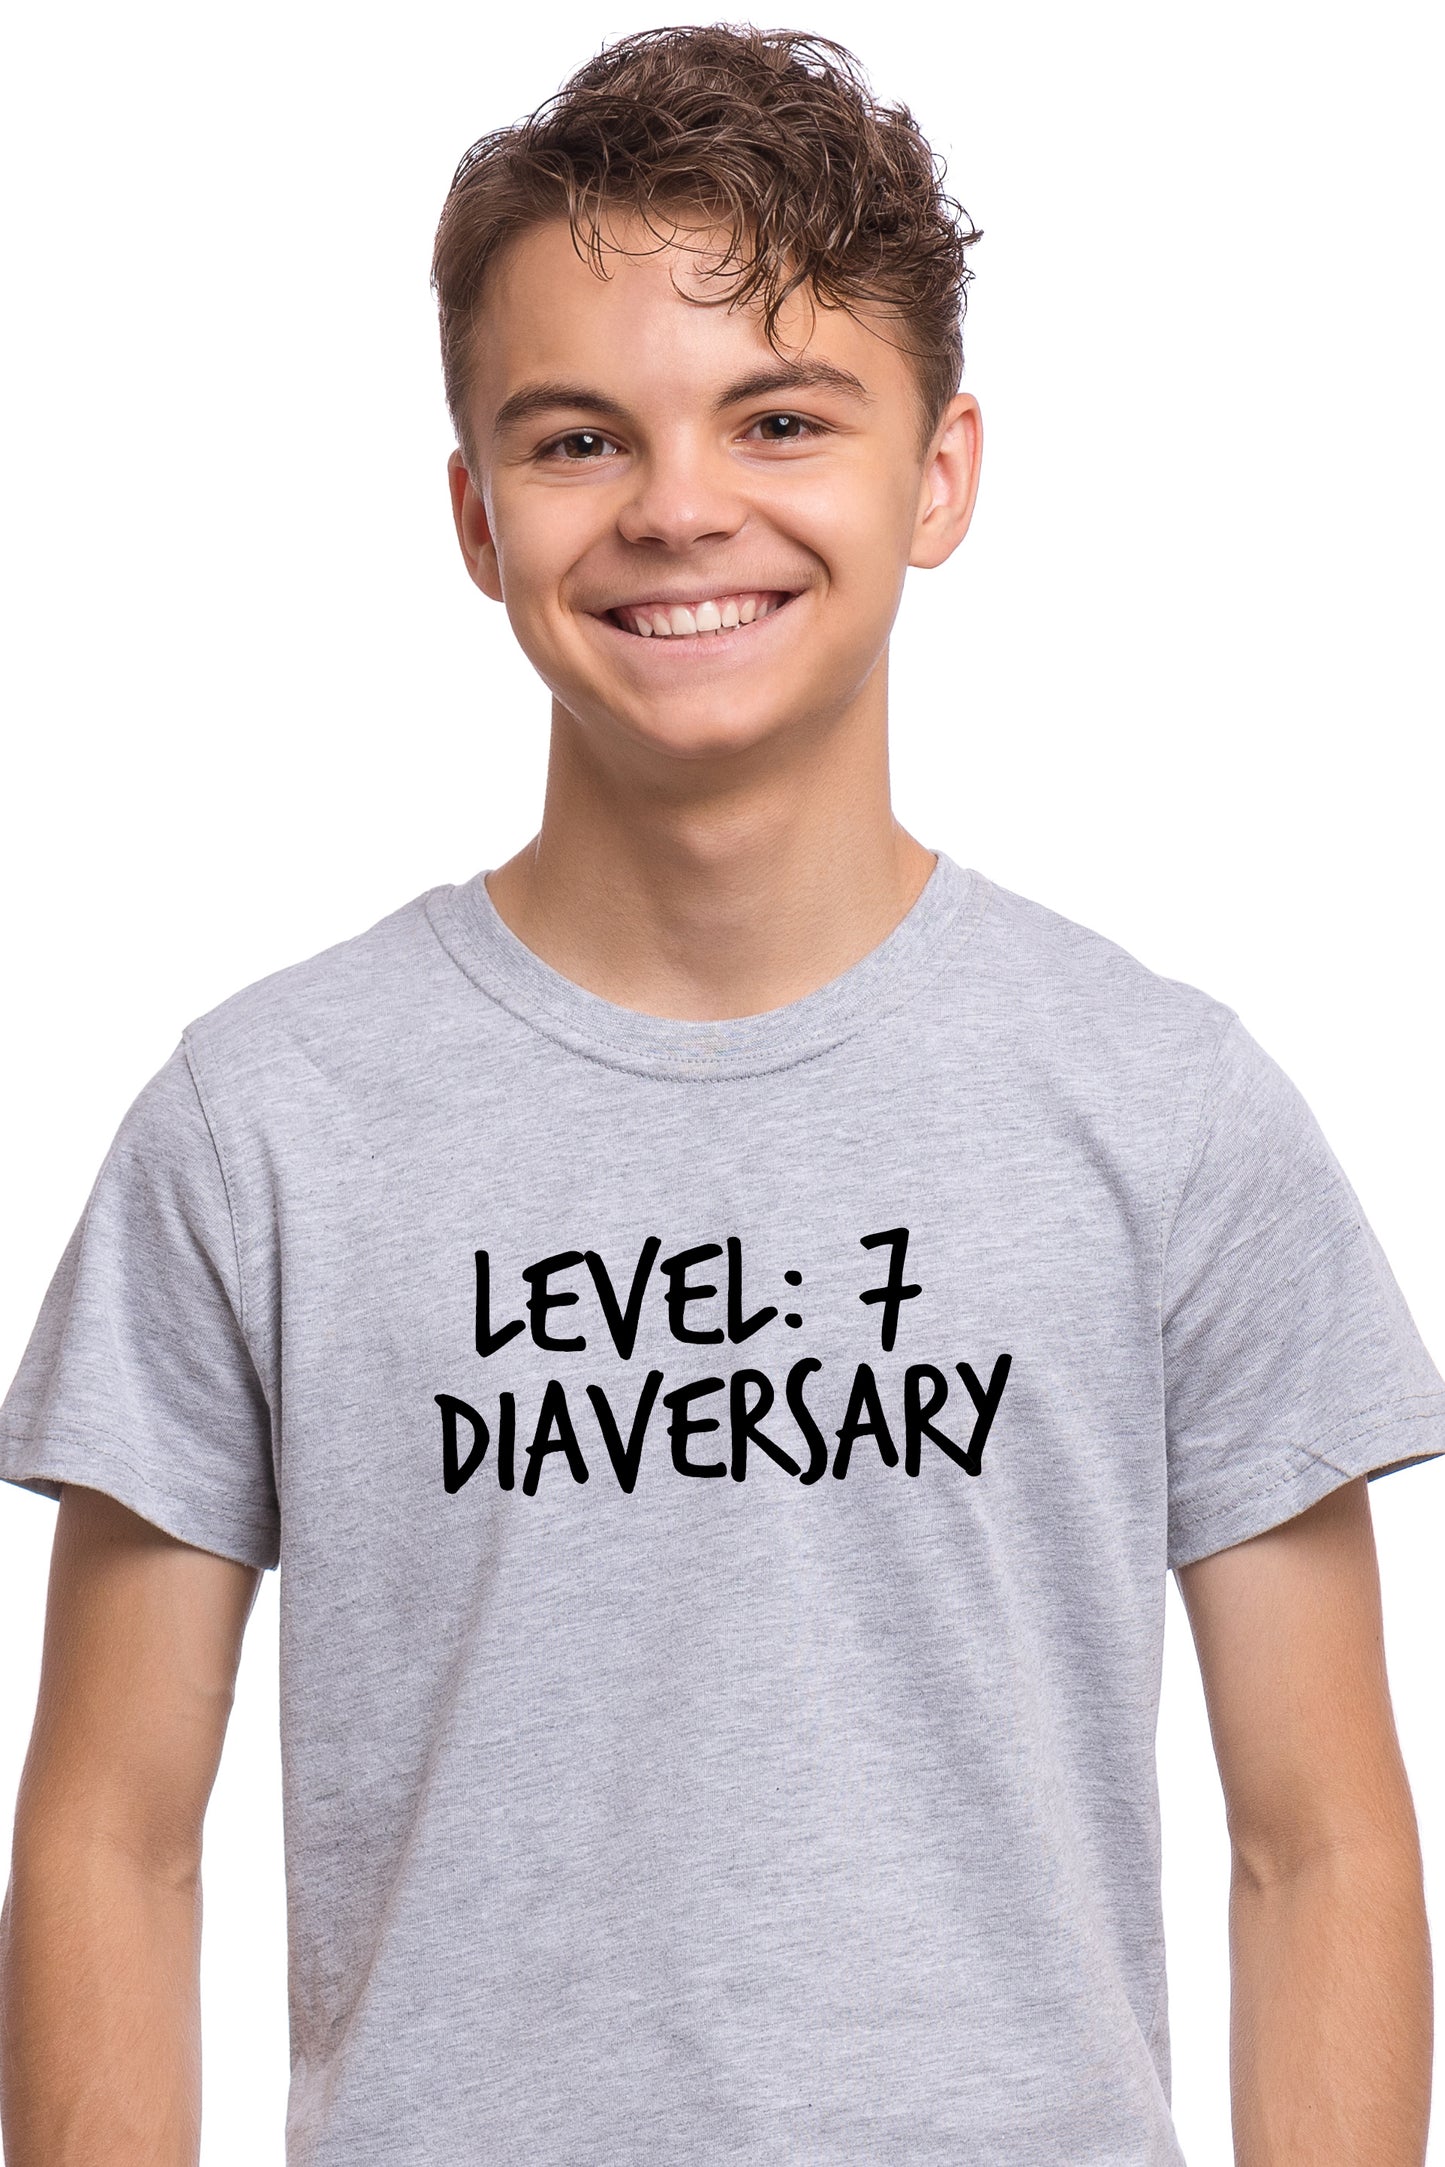 Level # Diaversary - Kids Unisex T-Shirt